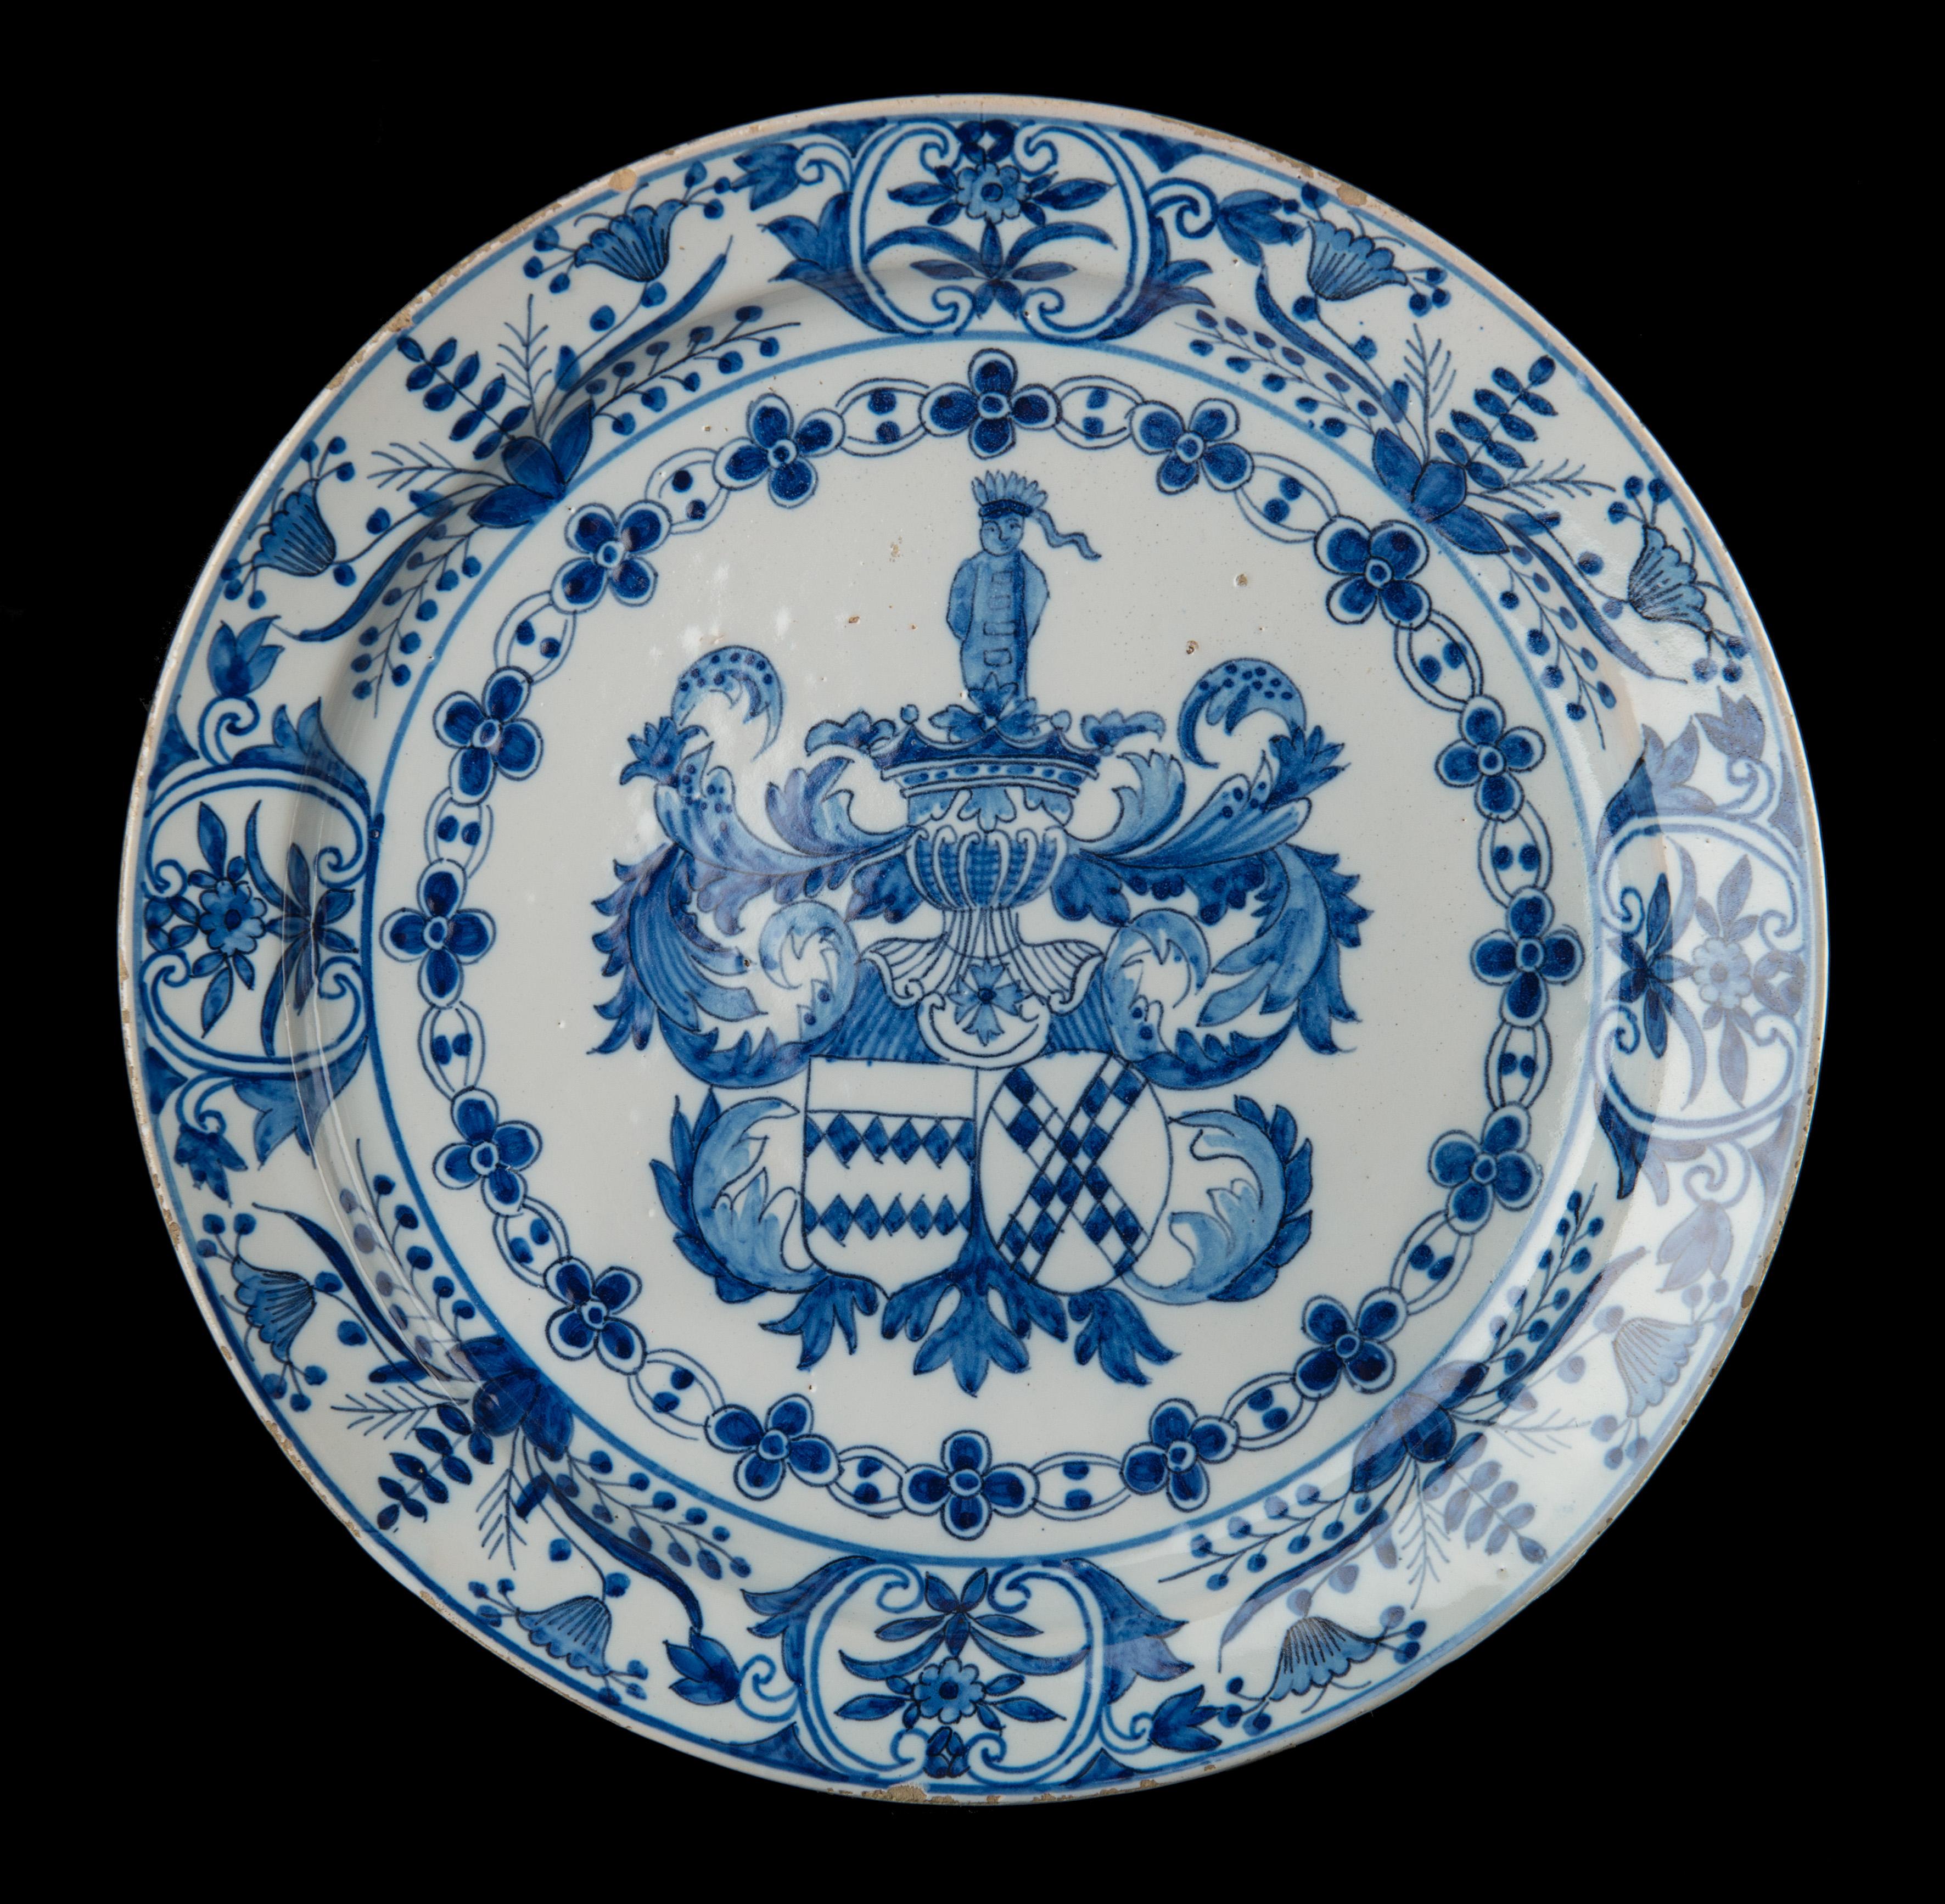 Blau-weißes Wappenschild mit dem Wappen von Johan van der Does und Elisabeth van der Dussen. 
Delft, 1686-1701. Die griechische A-Töpferei. Zeichen: AK, Periode von Adrianus Kocx (1686-1701) 

Der blau-weiße Teller steht auf einem Fußrand und ist